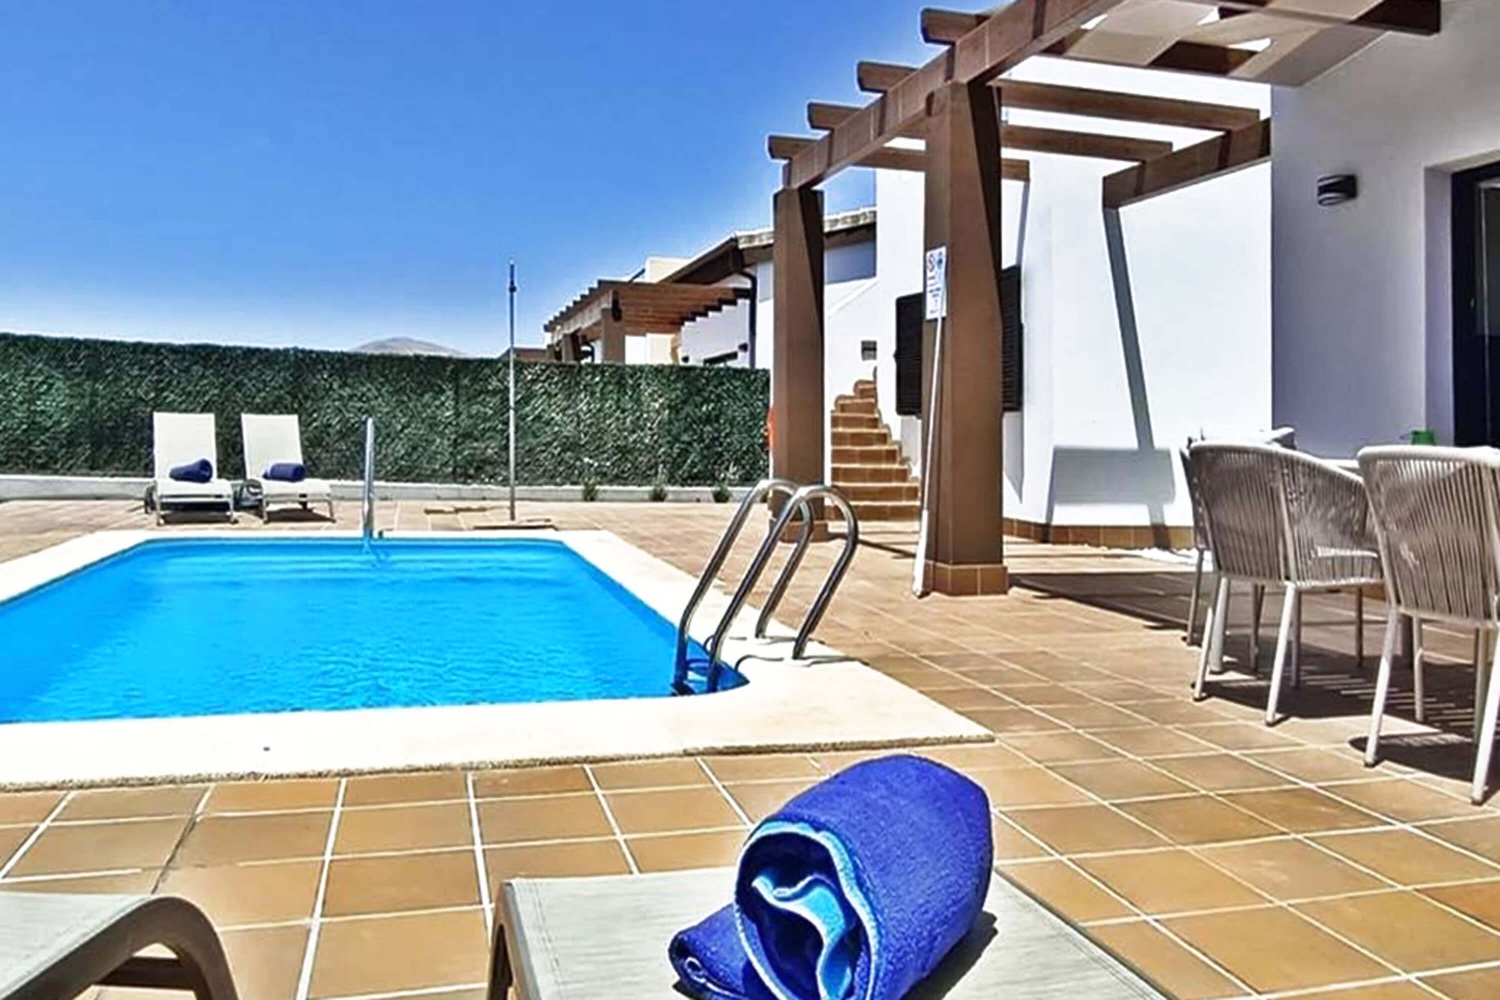 Moderní a stylově navržený rekreační dům se soukromým bazénem se nachází na jihu ostrova Fuerteventura